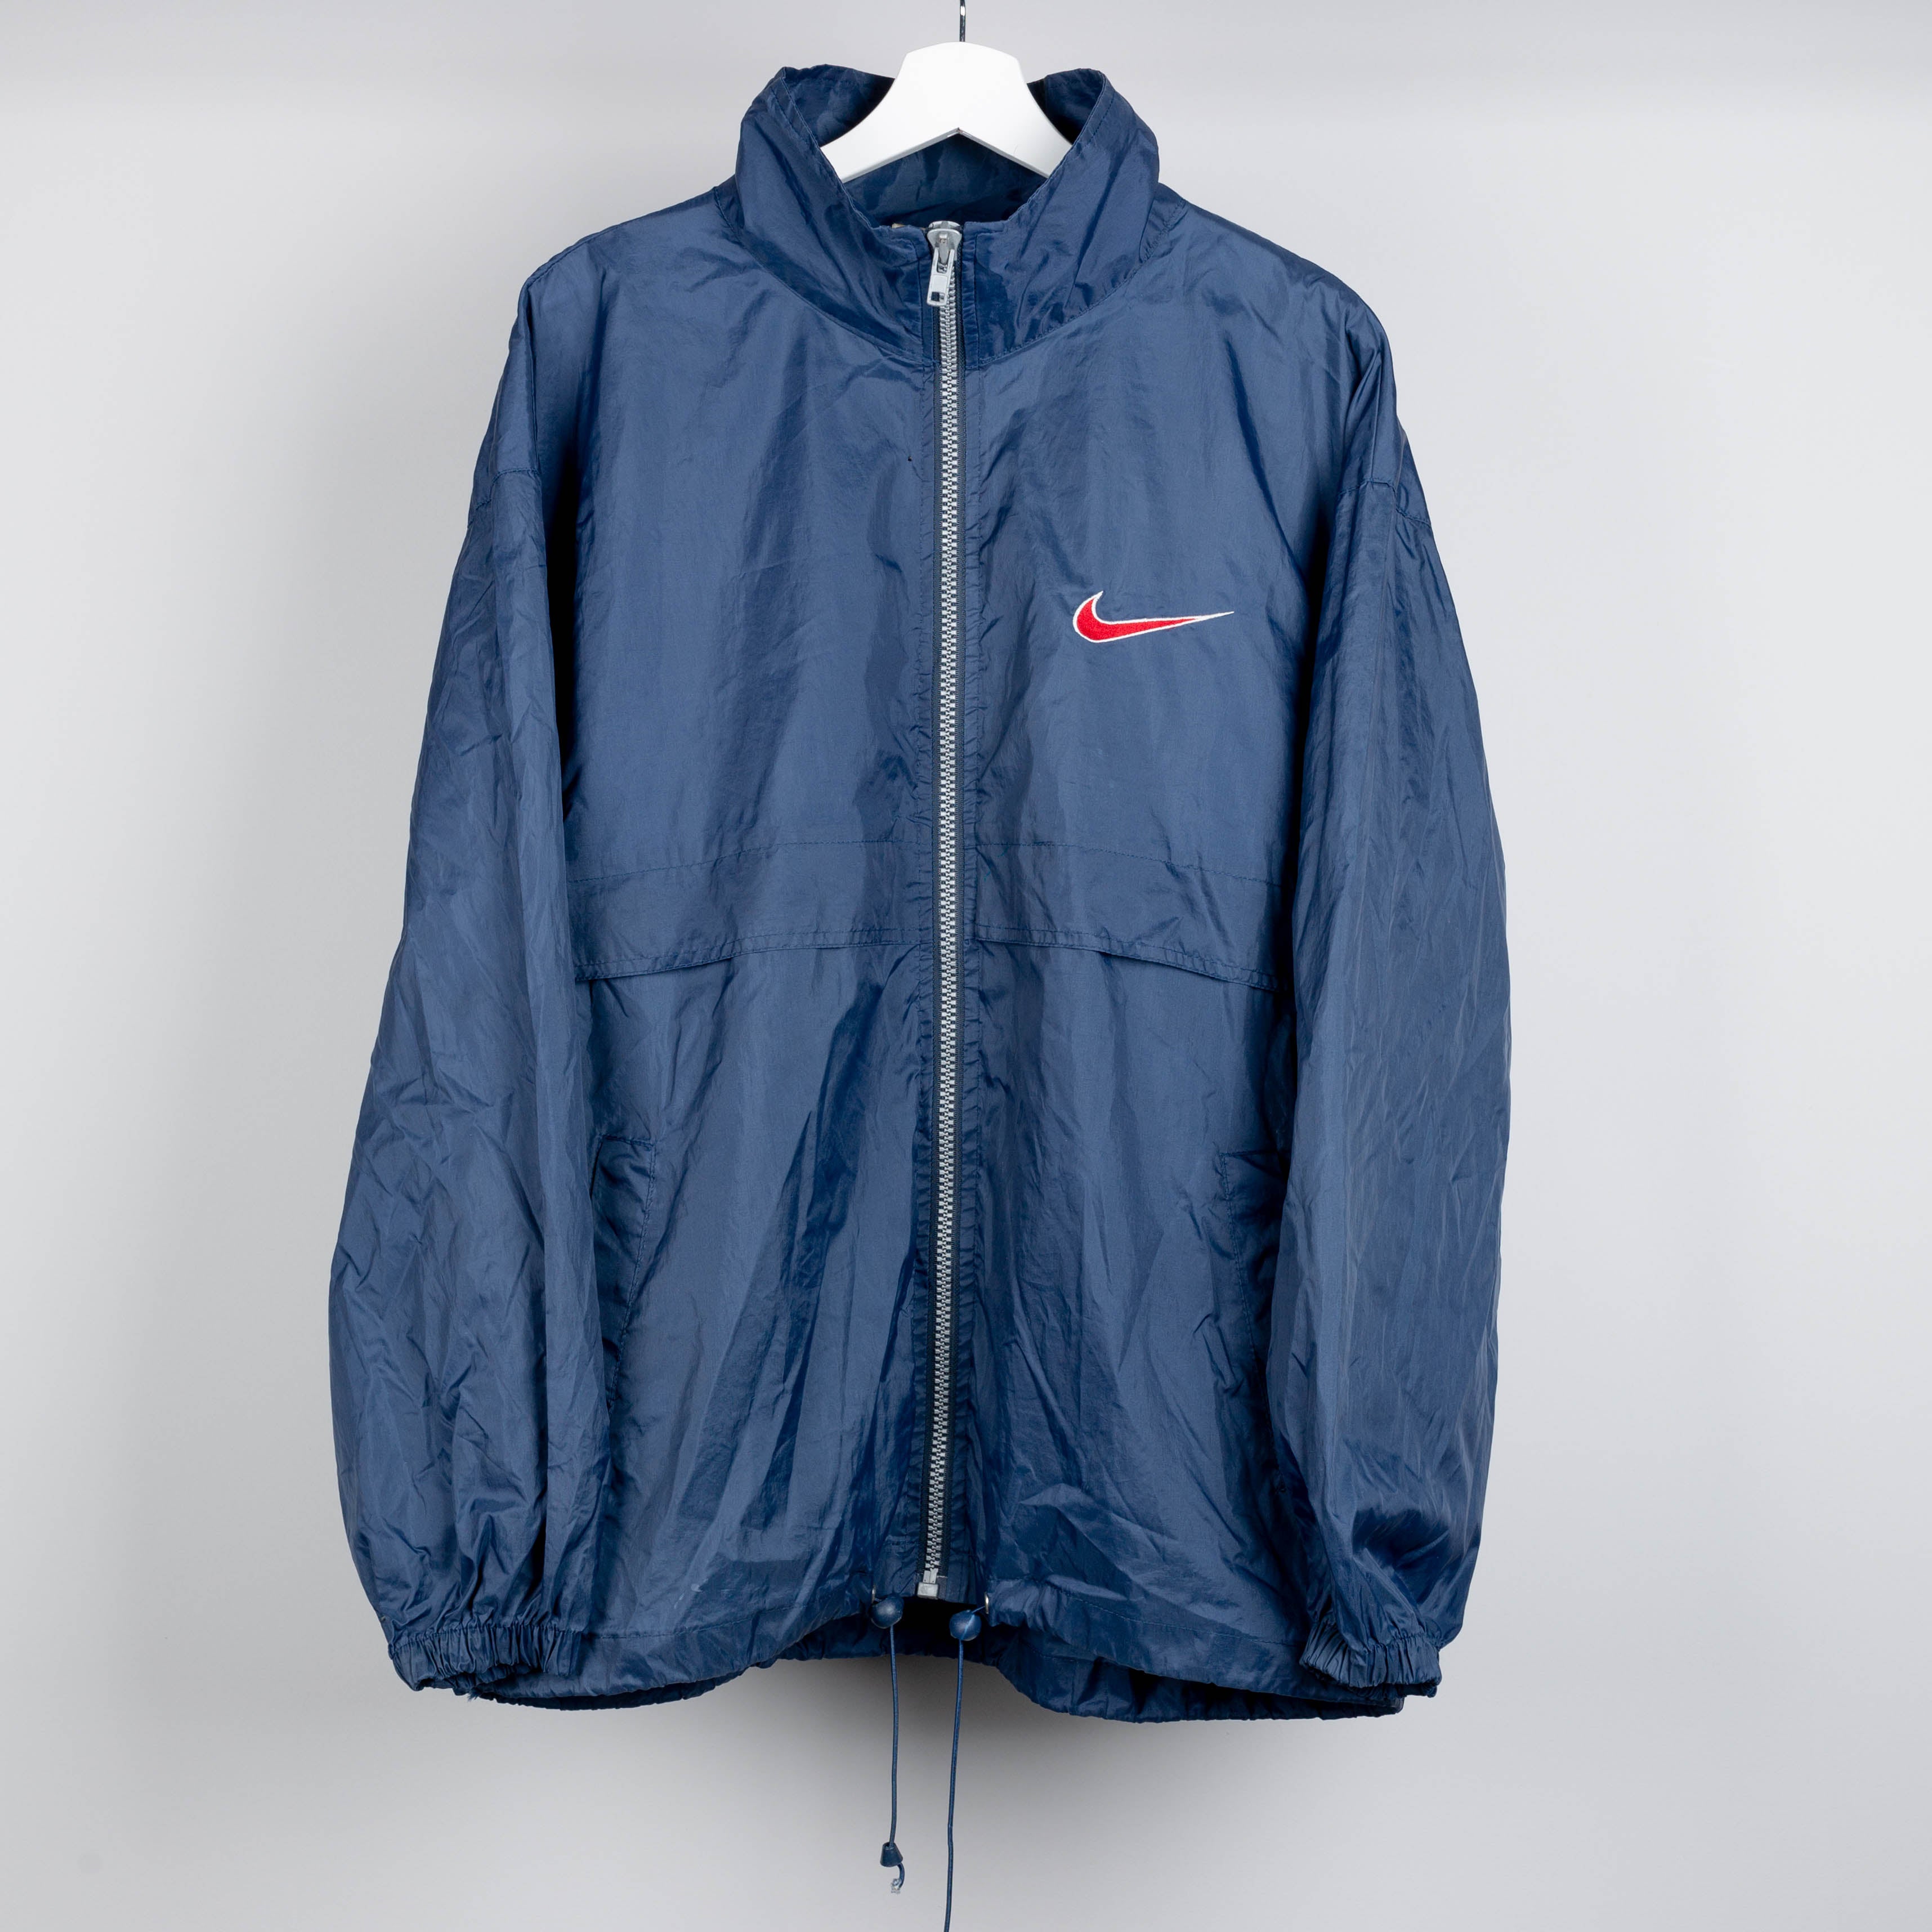 90's Nike Swoosh Navy Blue Windbreaker Zip Up Jacket Size L